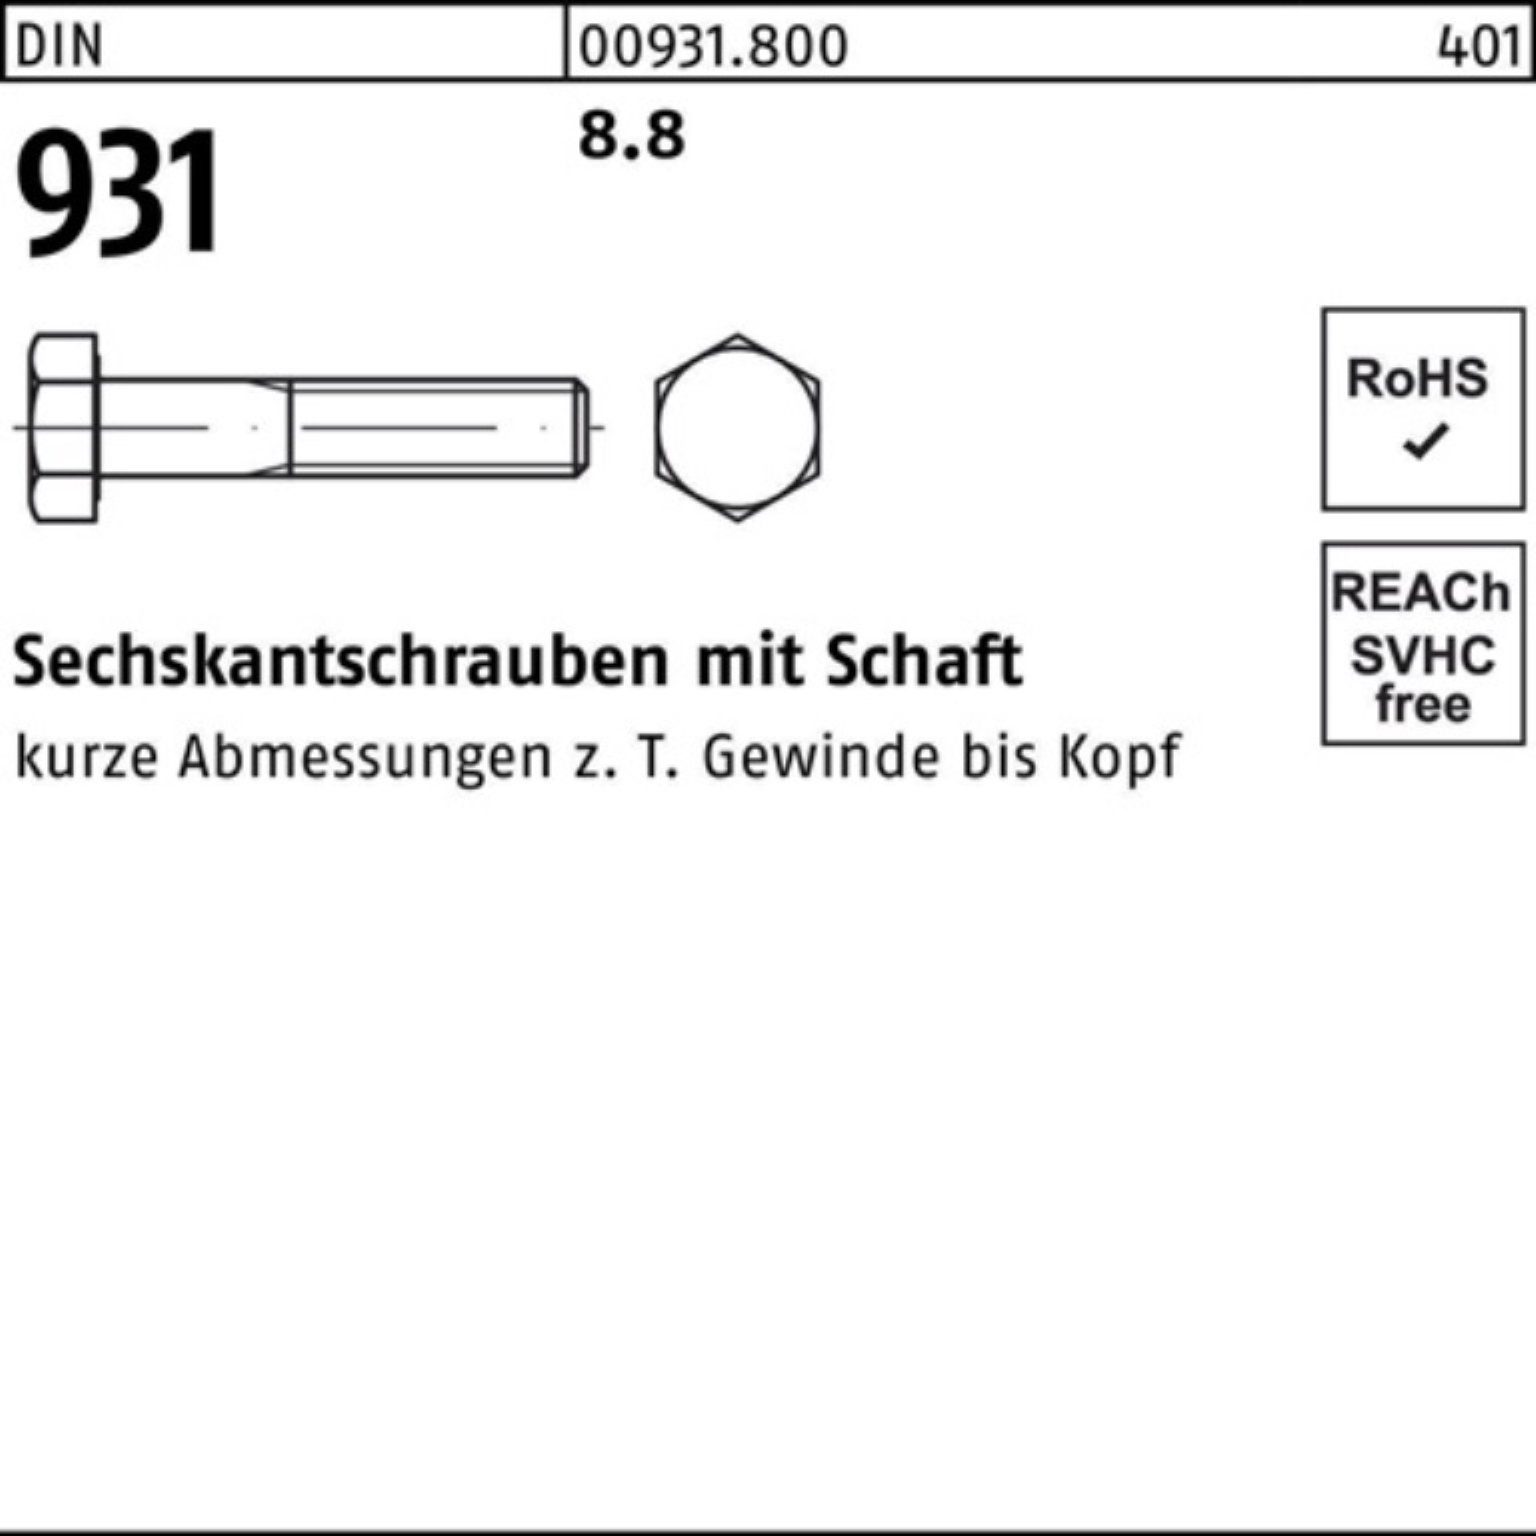 Reyher Sechskantschraube 100er 931 M36x Pack Stück DIN DIN 240 Sechskantschraube 8.8 Schaft 1